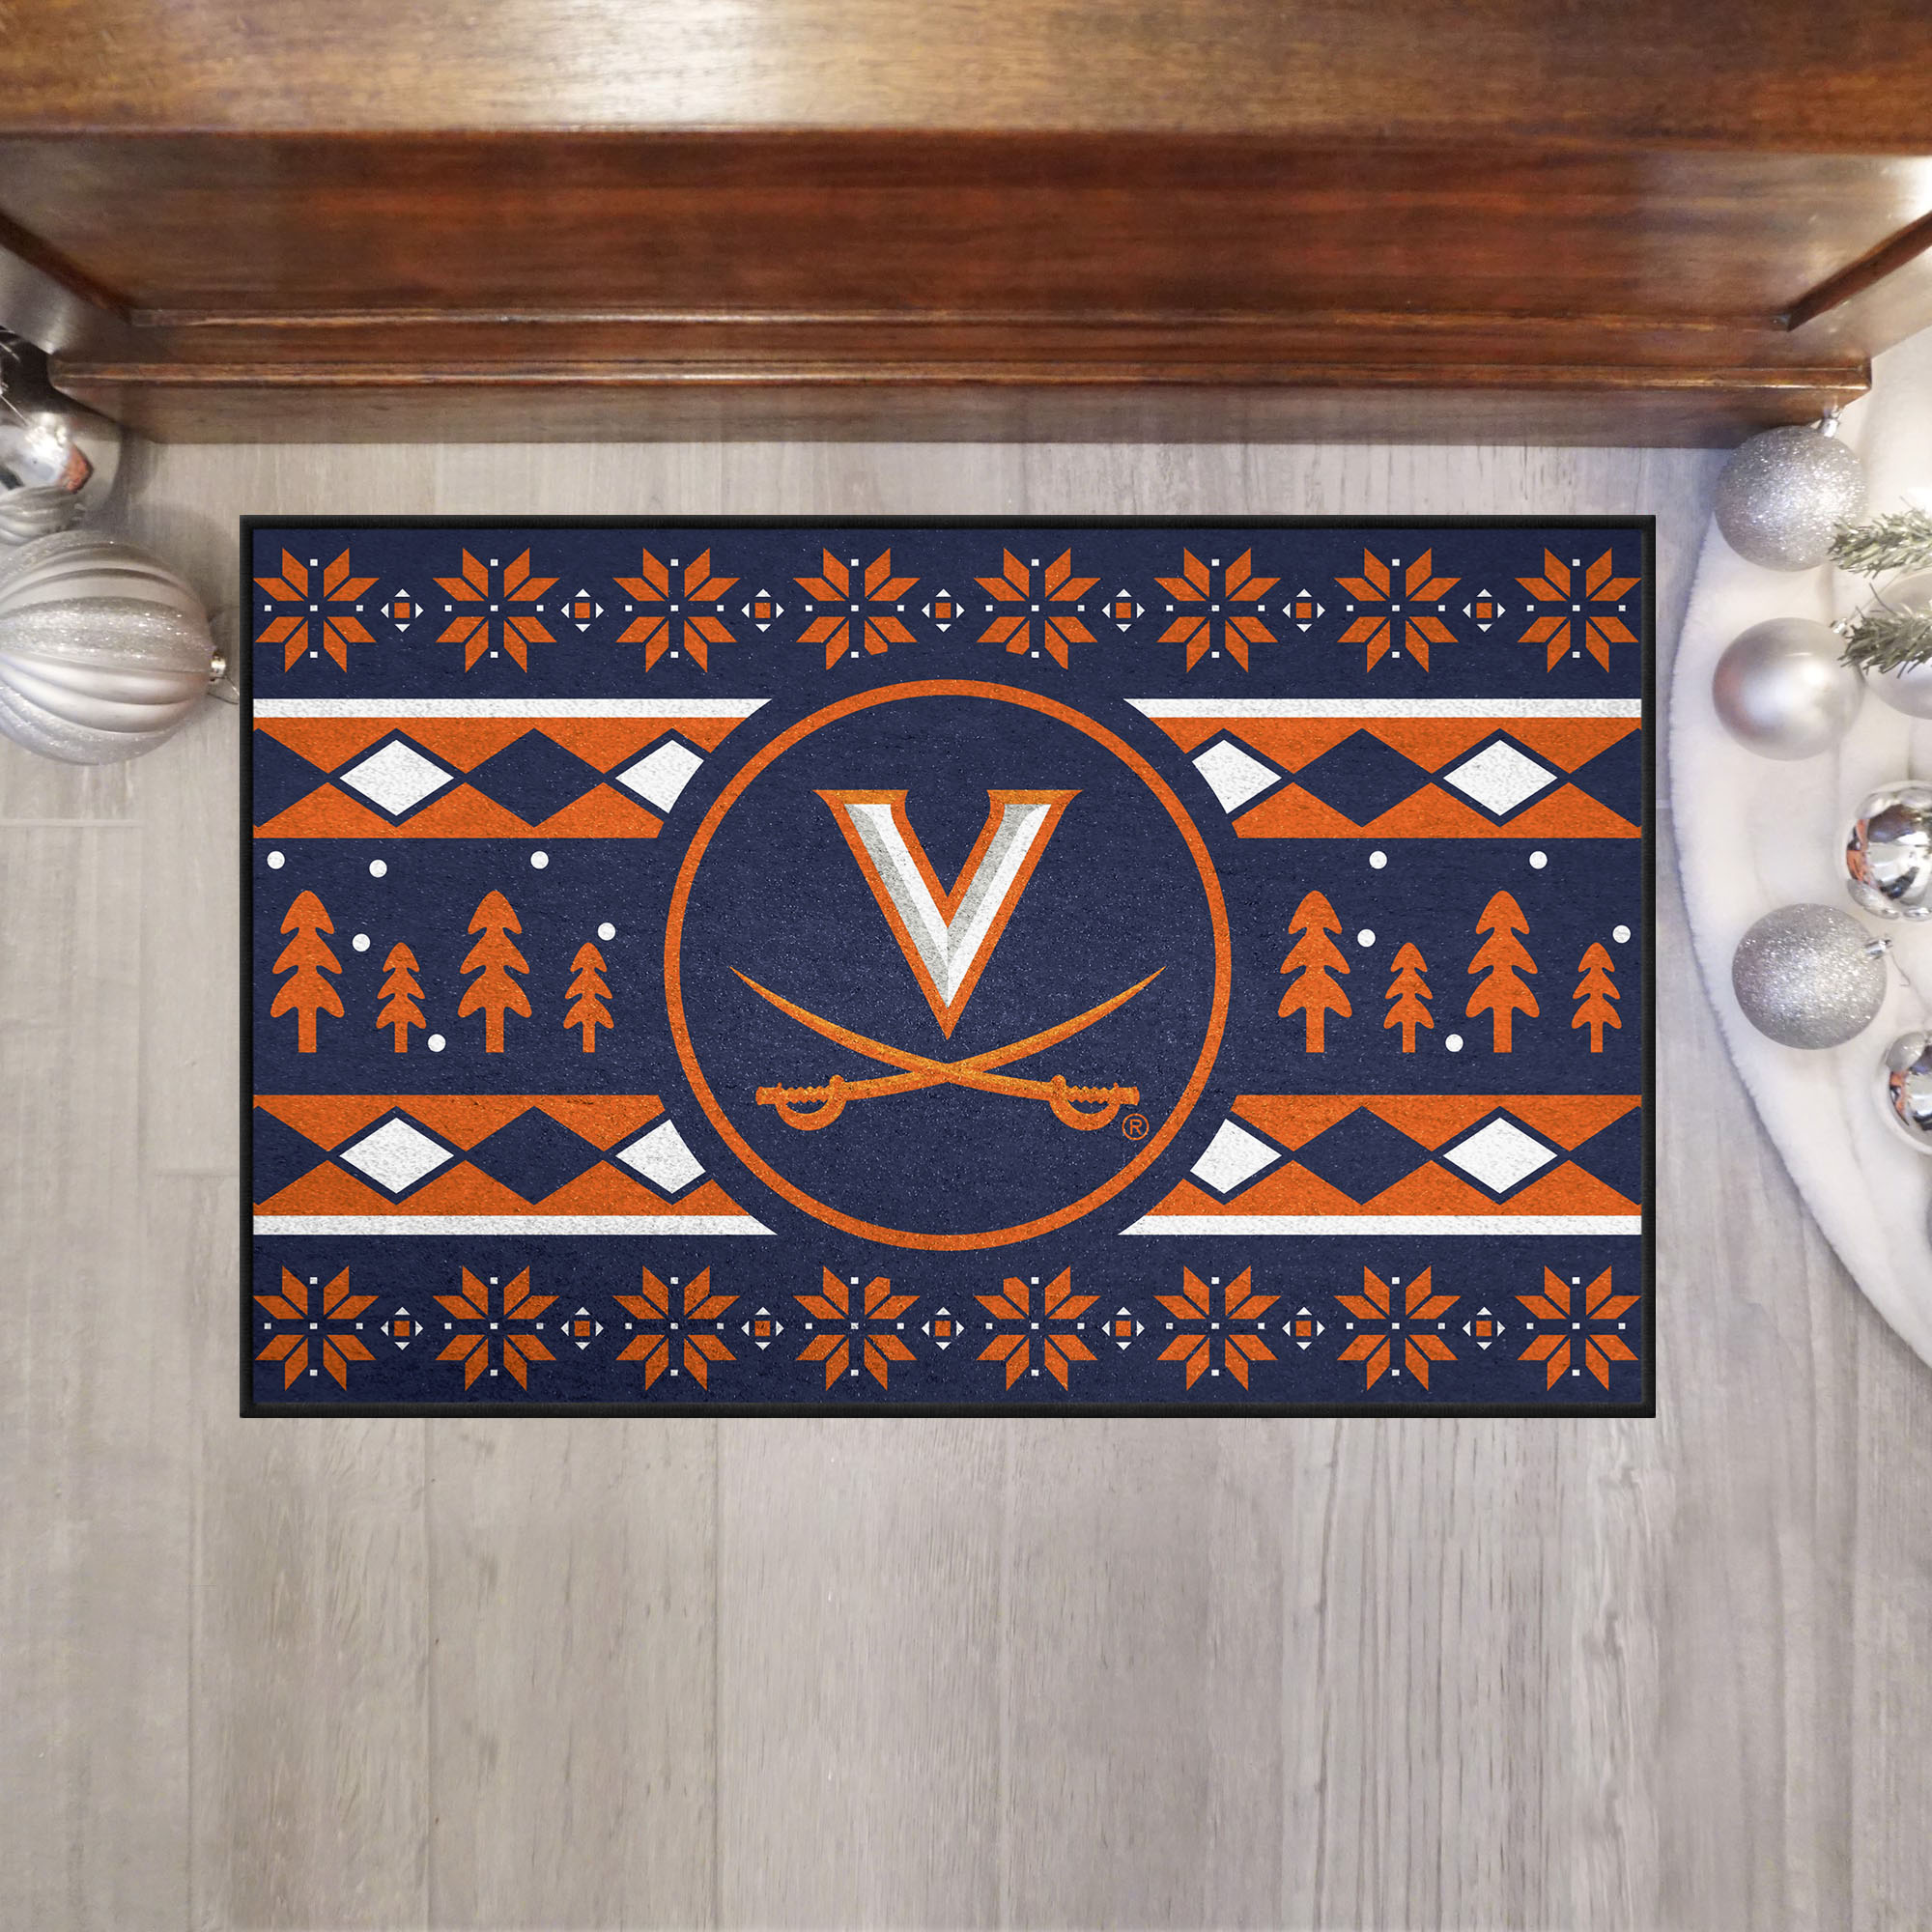 Virginia Cavaliers Holiday Sweater Starter Doormat - 19 x 30